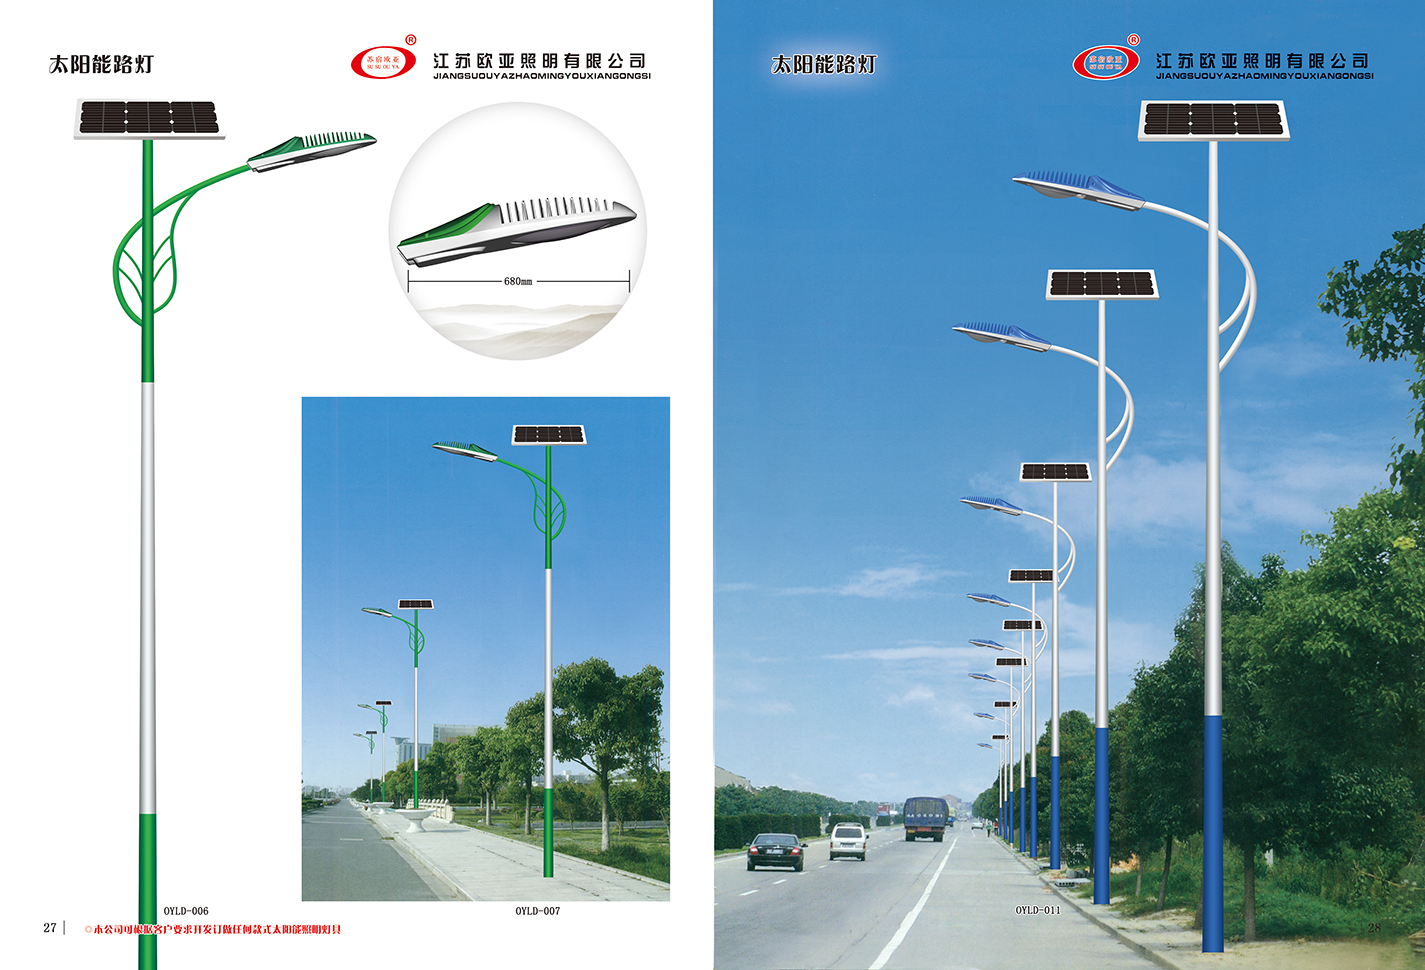 江苏欧亚照明股份有限公司 太阳能路灯系列产品展示